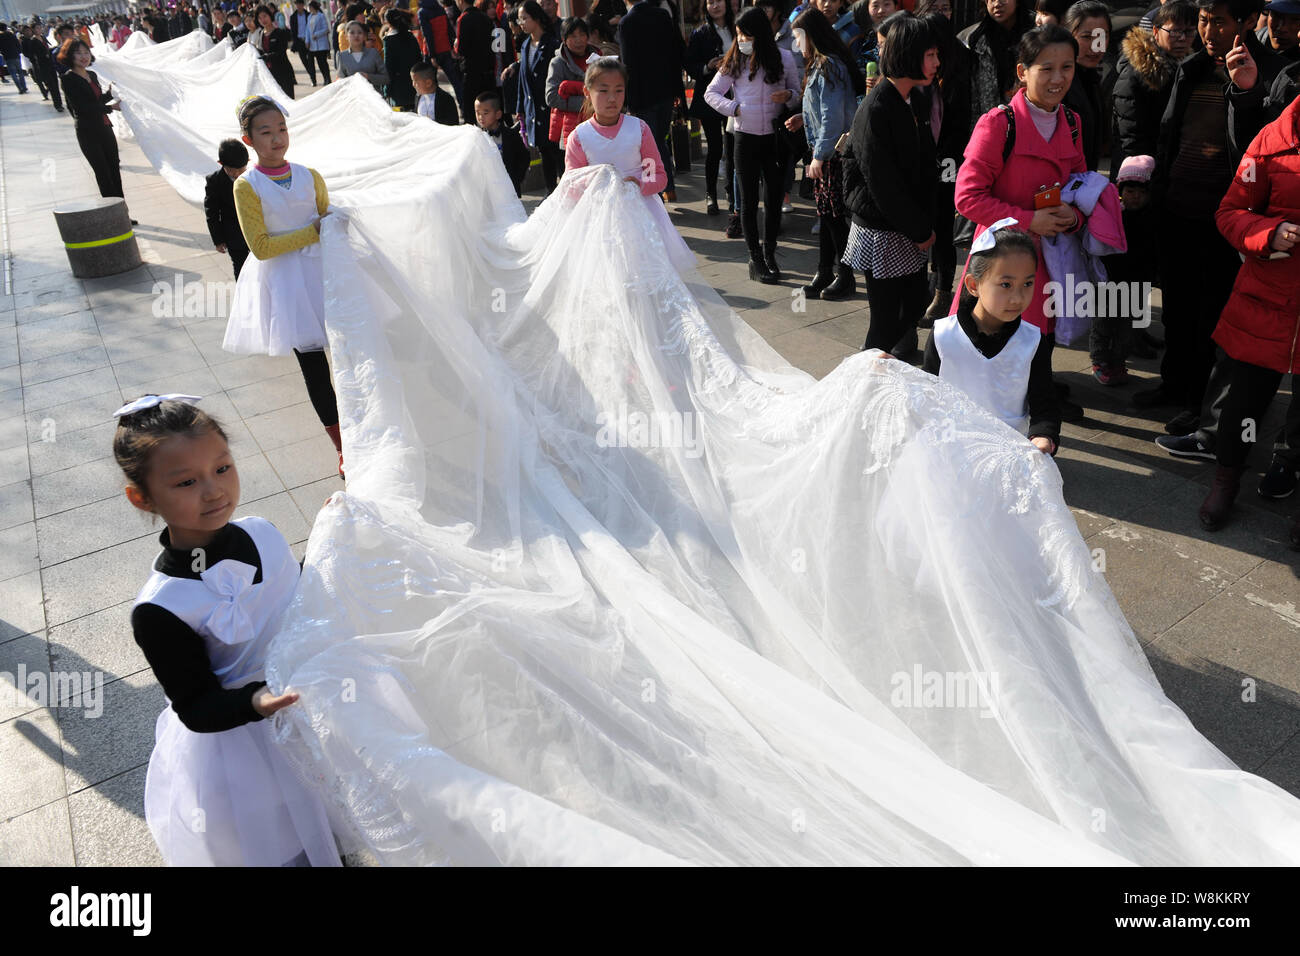 Junge Kinder und Mitarbeiterinnen und Mitarbeiter von einem Hochzeitskleid  Unternehmen tragen die 101 Meter lange Schwanz einer Brautkleid durch ein  Modell paradieren entlang einer Straße angezeigt Stockfotografie - Alamy